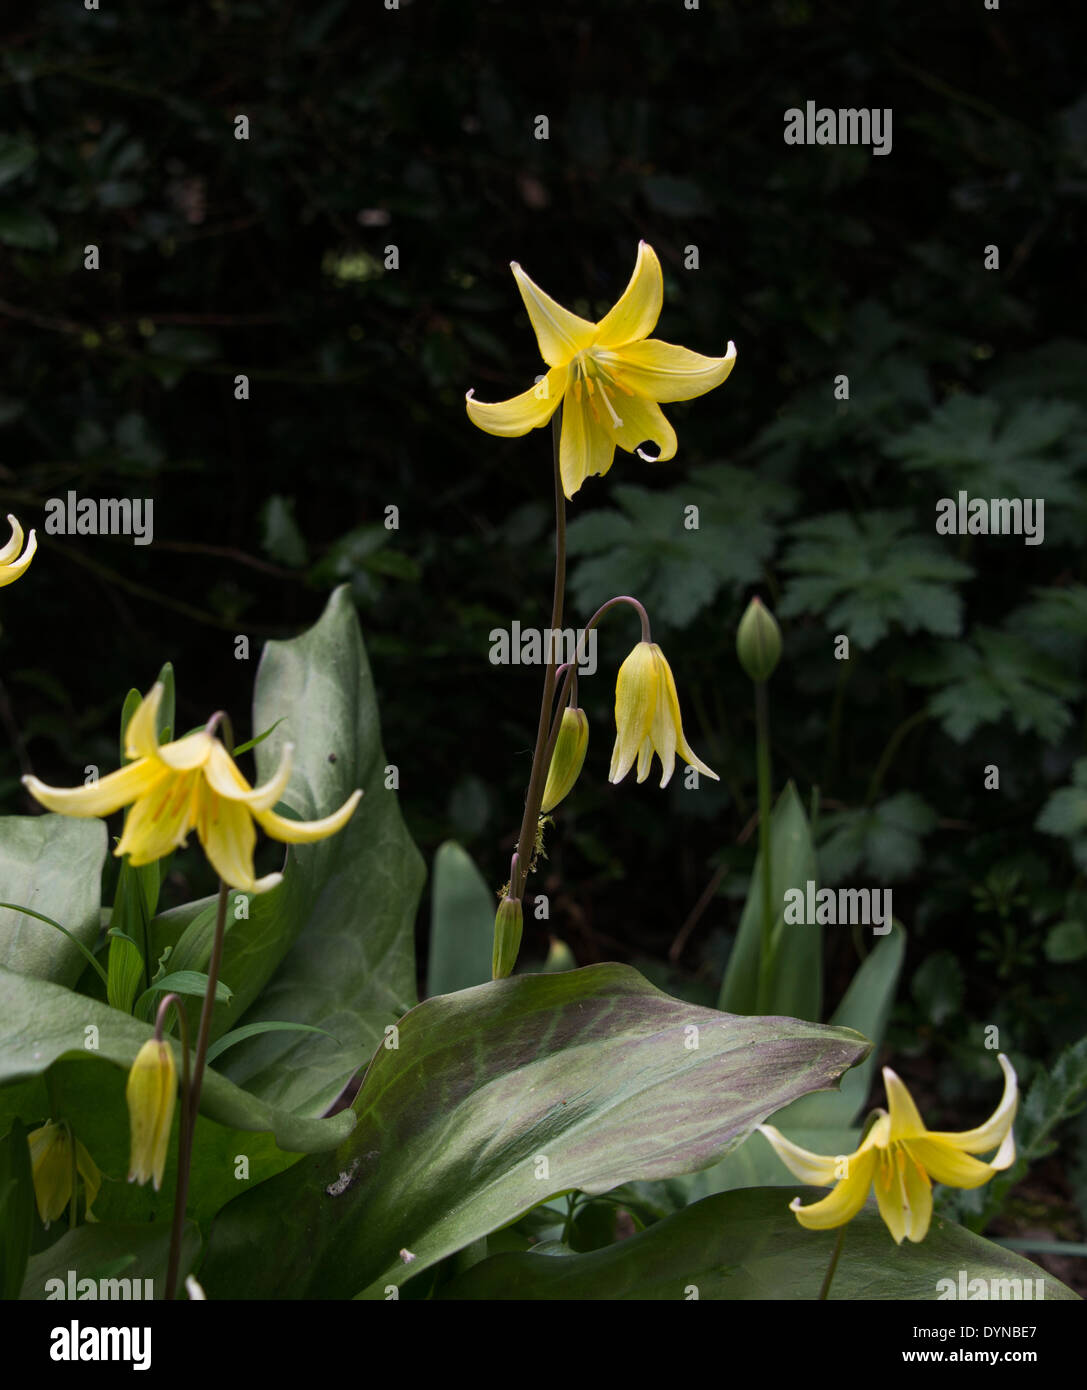 Erythronium dens canis 'Pagoda', este cultivar del diente de perro Violeta tiene flores de color amarillo. Es ideal para sombrear. Foto de stock